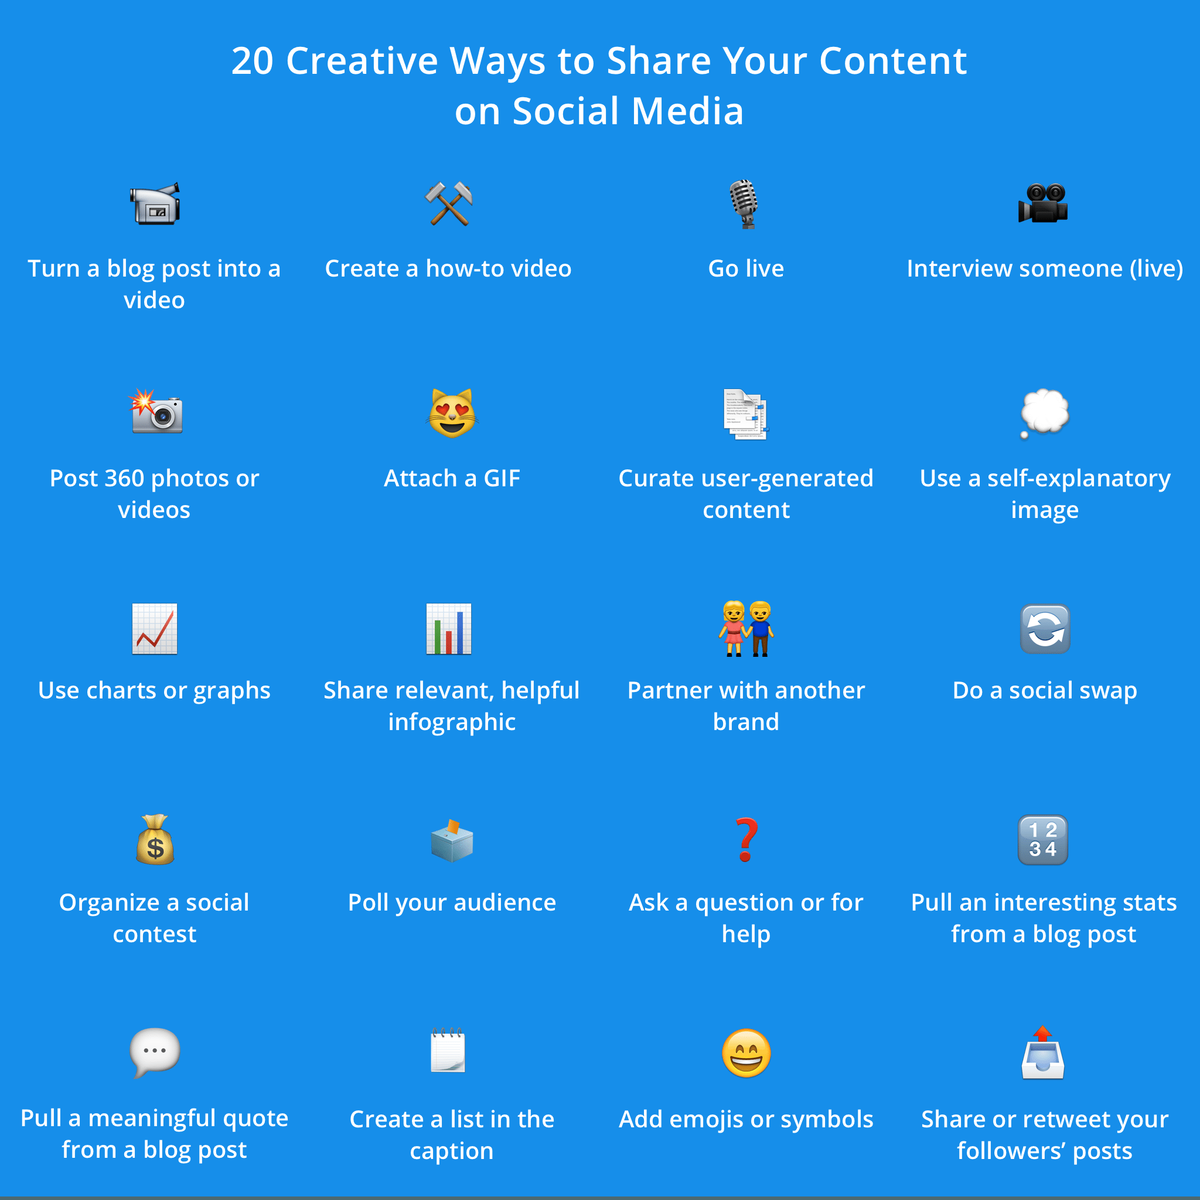 Supere su bloque de creatividad con estas 20 ideas de contenido para redes sociales